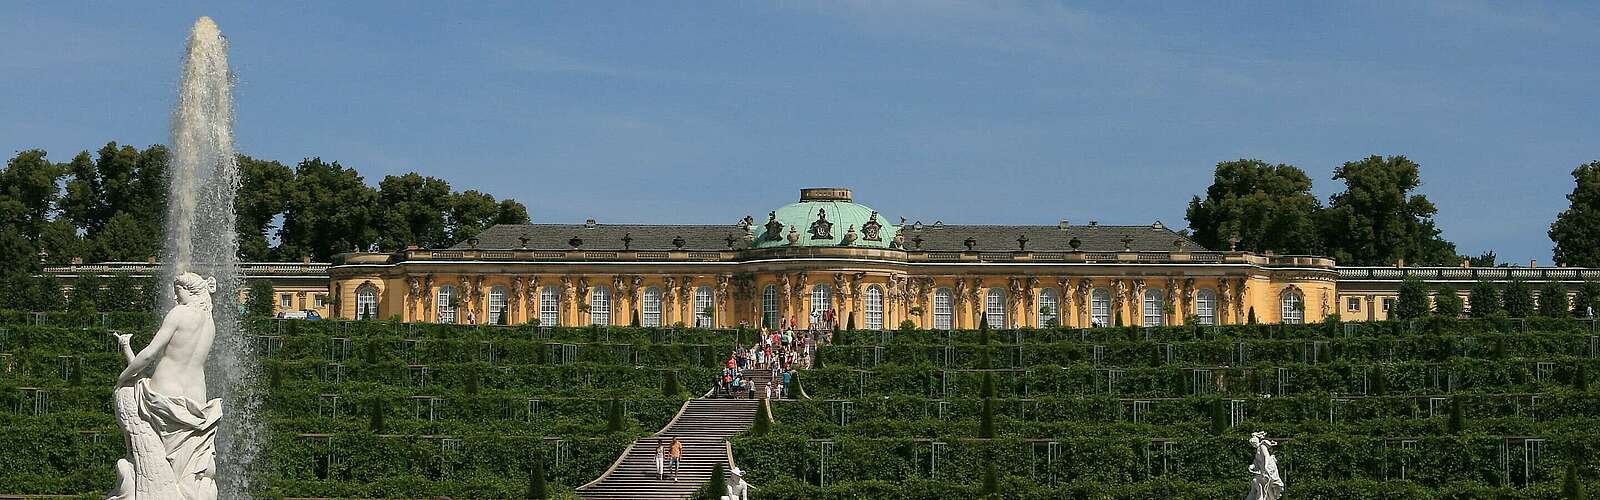 Schloss Sanssouci mit Weinbergterrassen,
        
    

        Foto: Fotograf / Lizenz - Media Import/Steffen Lehmann